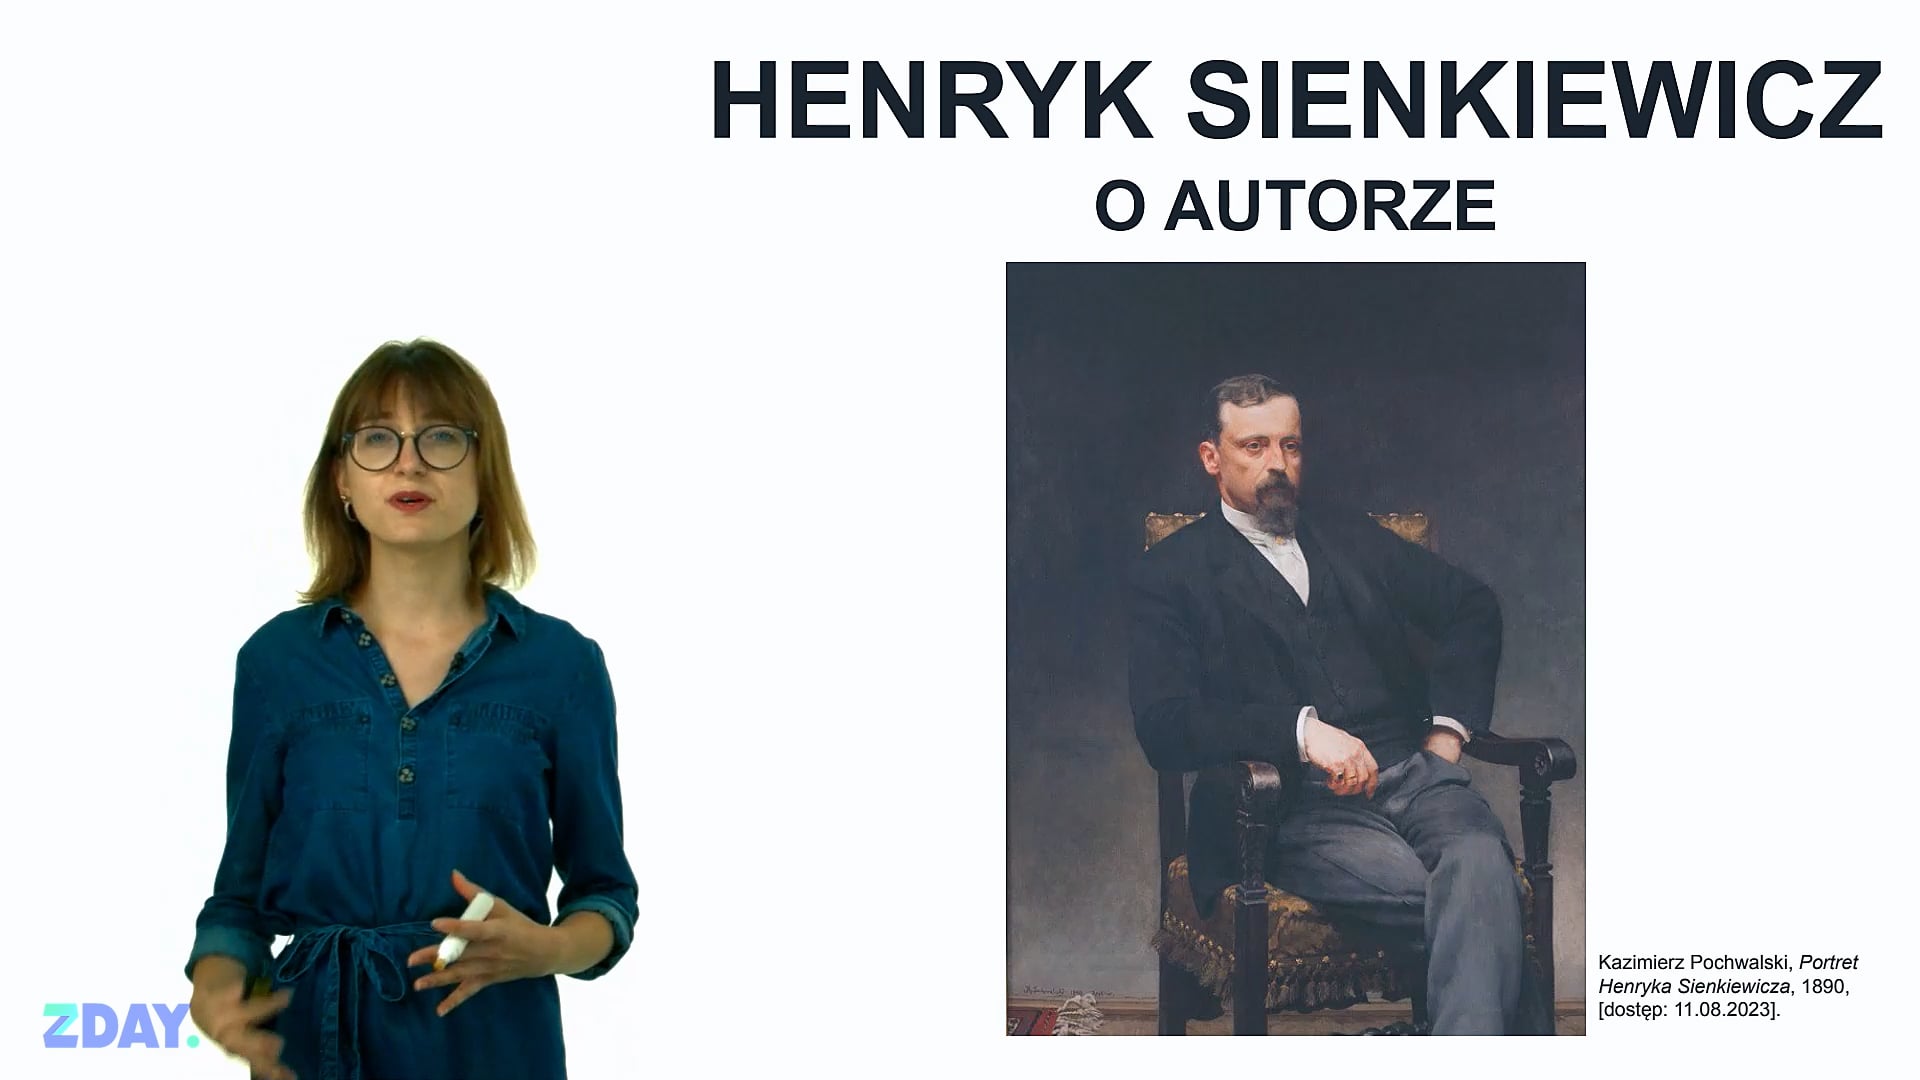 Miniaturka materiału wideo na temat: Henryk Sienkiewicz – o autorze. Kliknij, aby obejrzeć materiał.